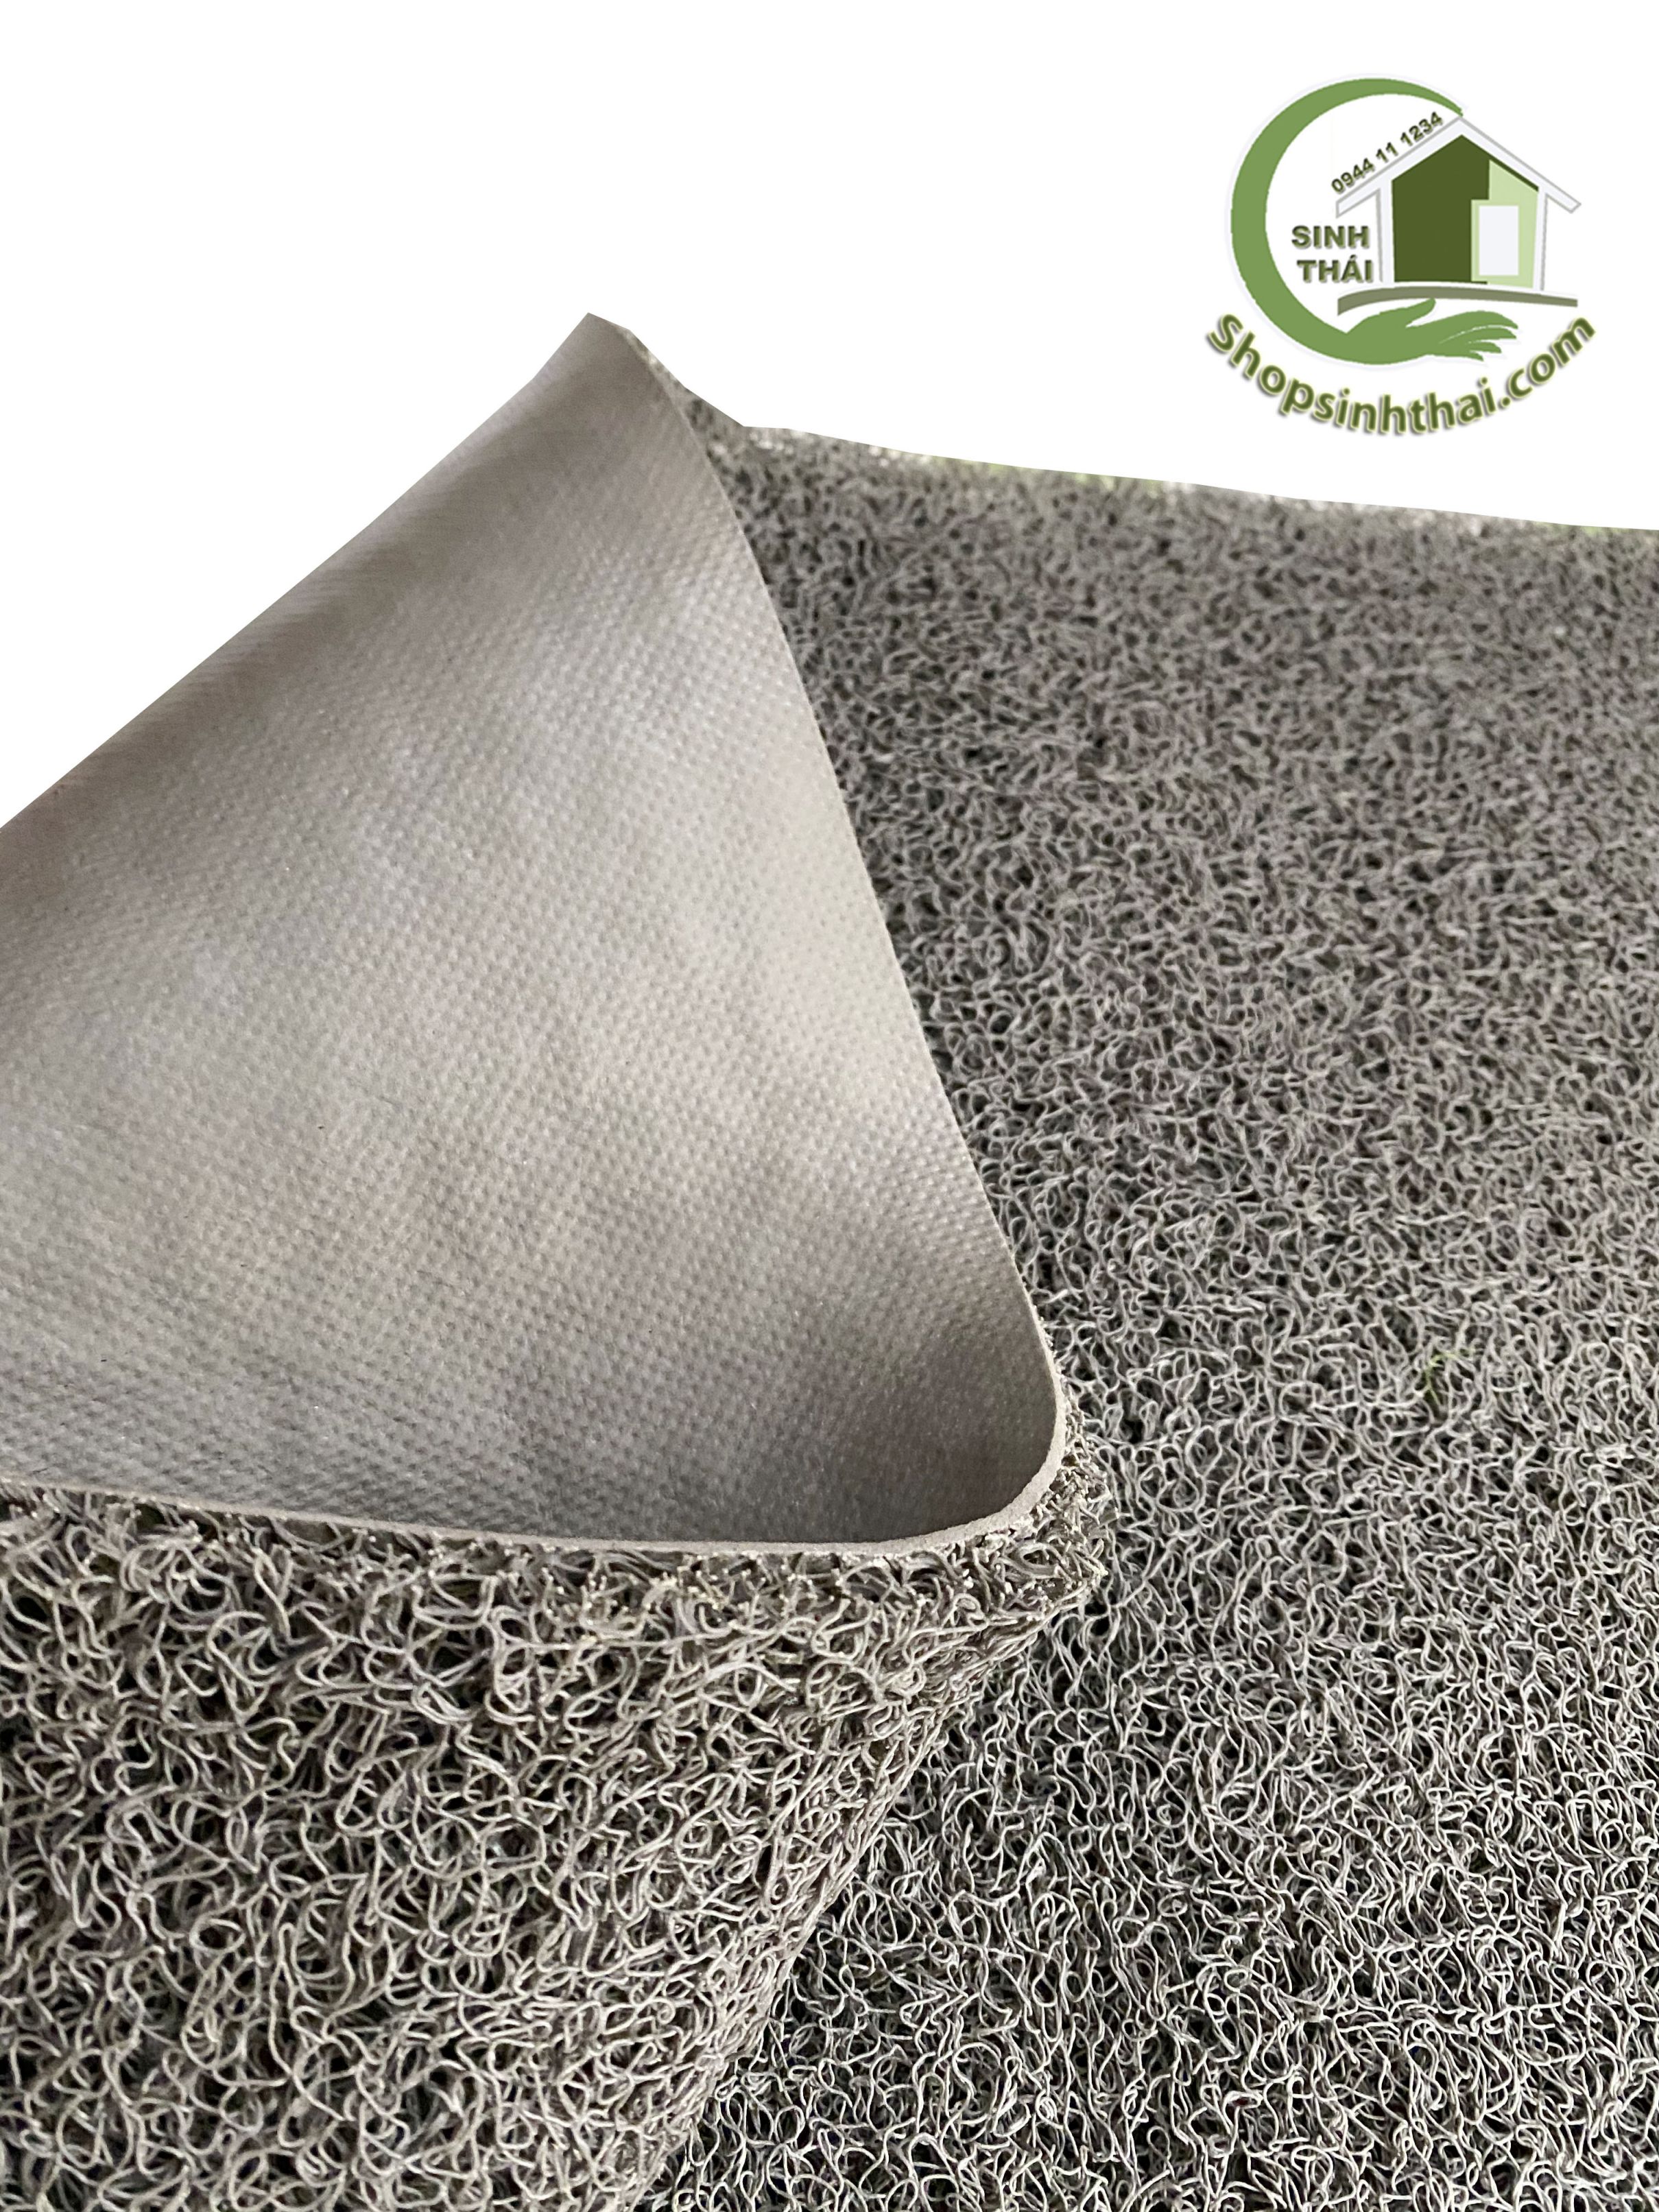 Thảm nhựa rối sợi mì tôm lót sàn chống trơn trượt - [ 50cm x khổ 120cm ] màu xám